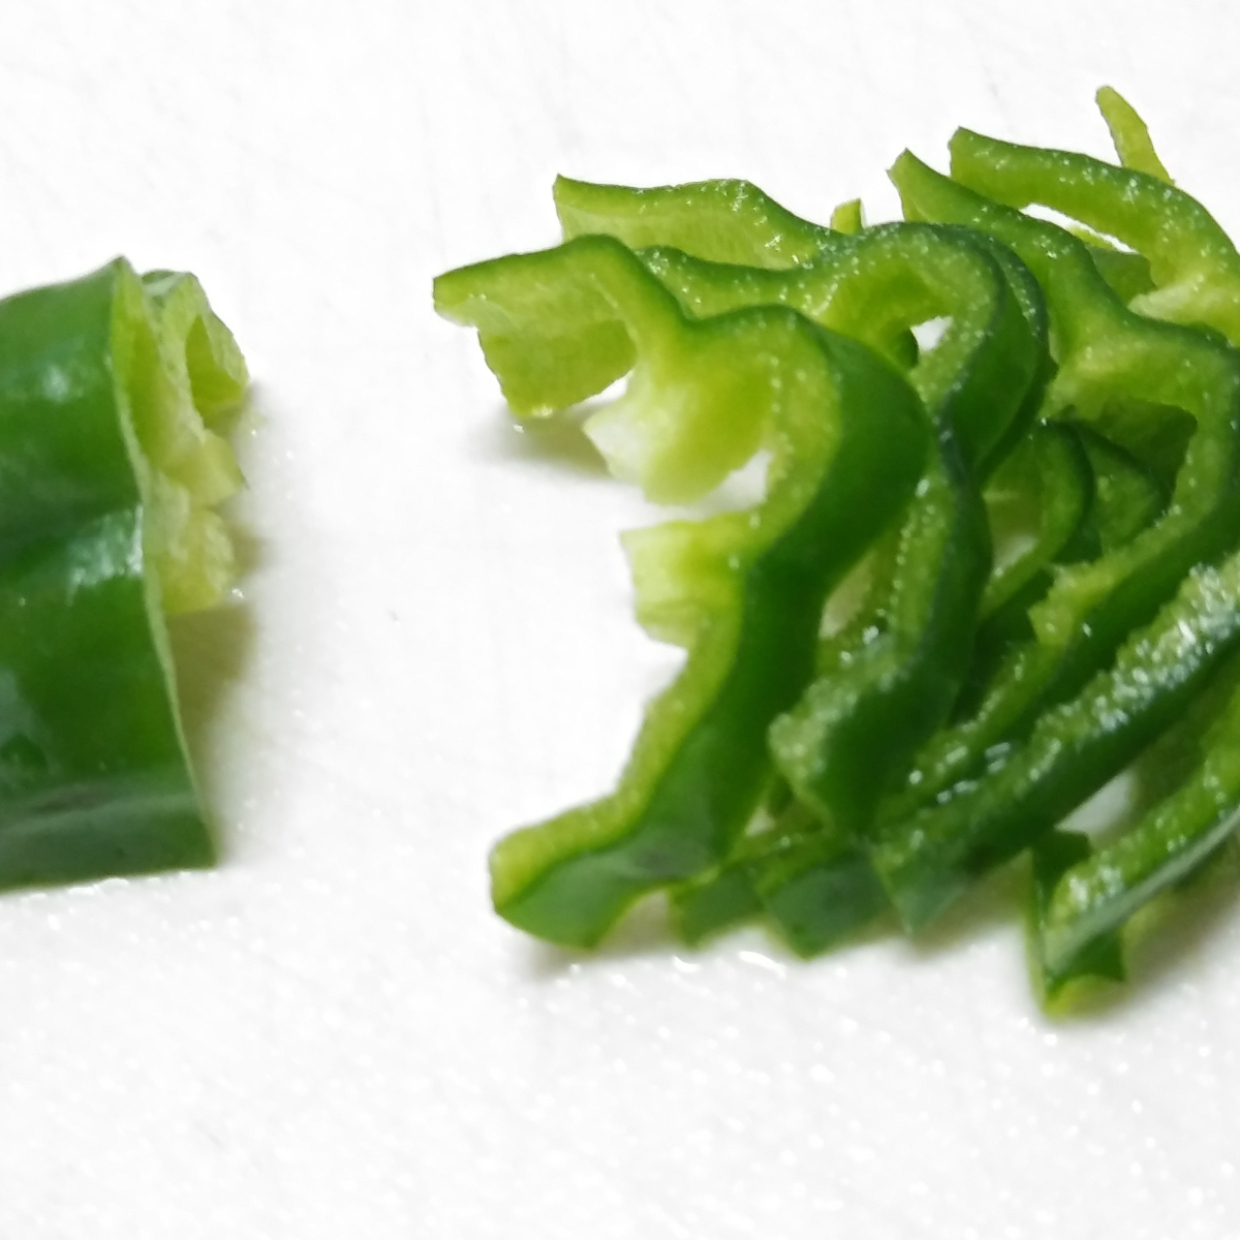  【野菜の切り方】繊維の向きを変えると旨味が変わる⁉キャベツ、玉ねぎ、にんじん、ピーマンの検証報告 